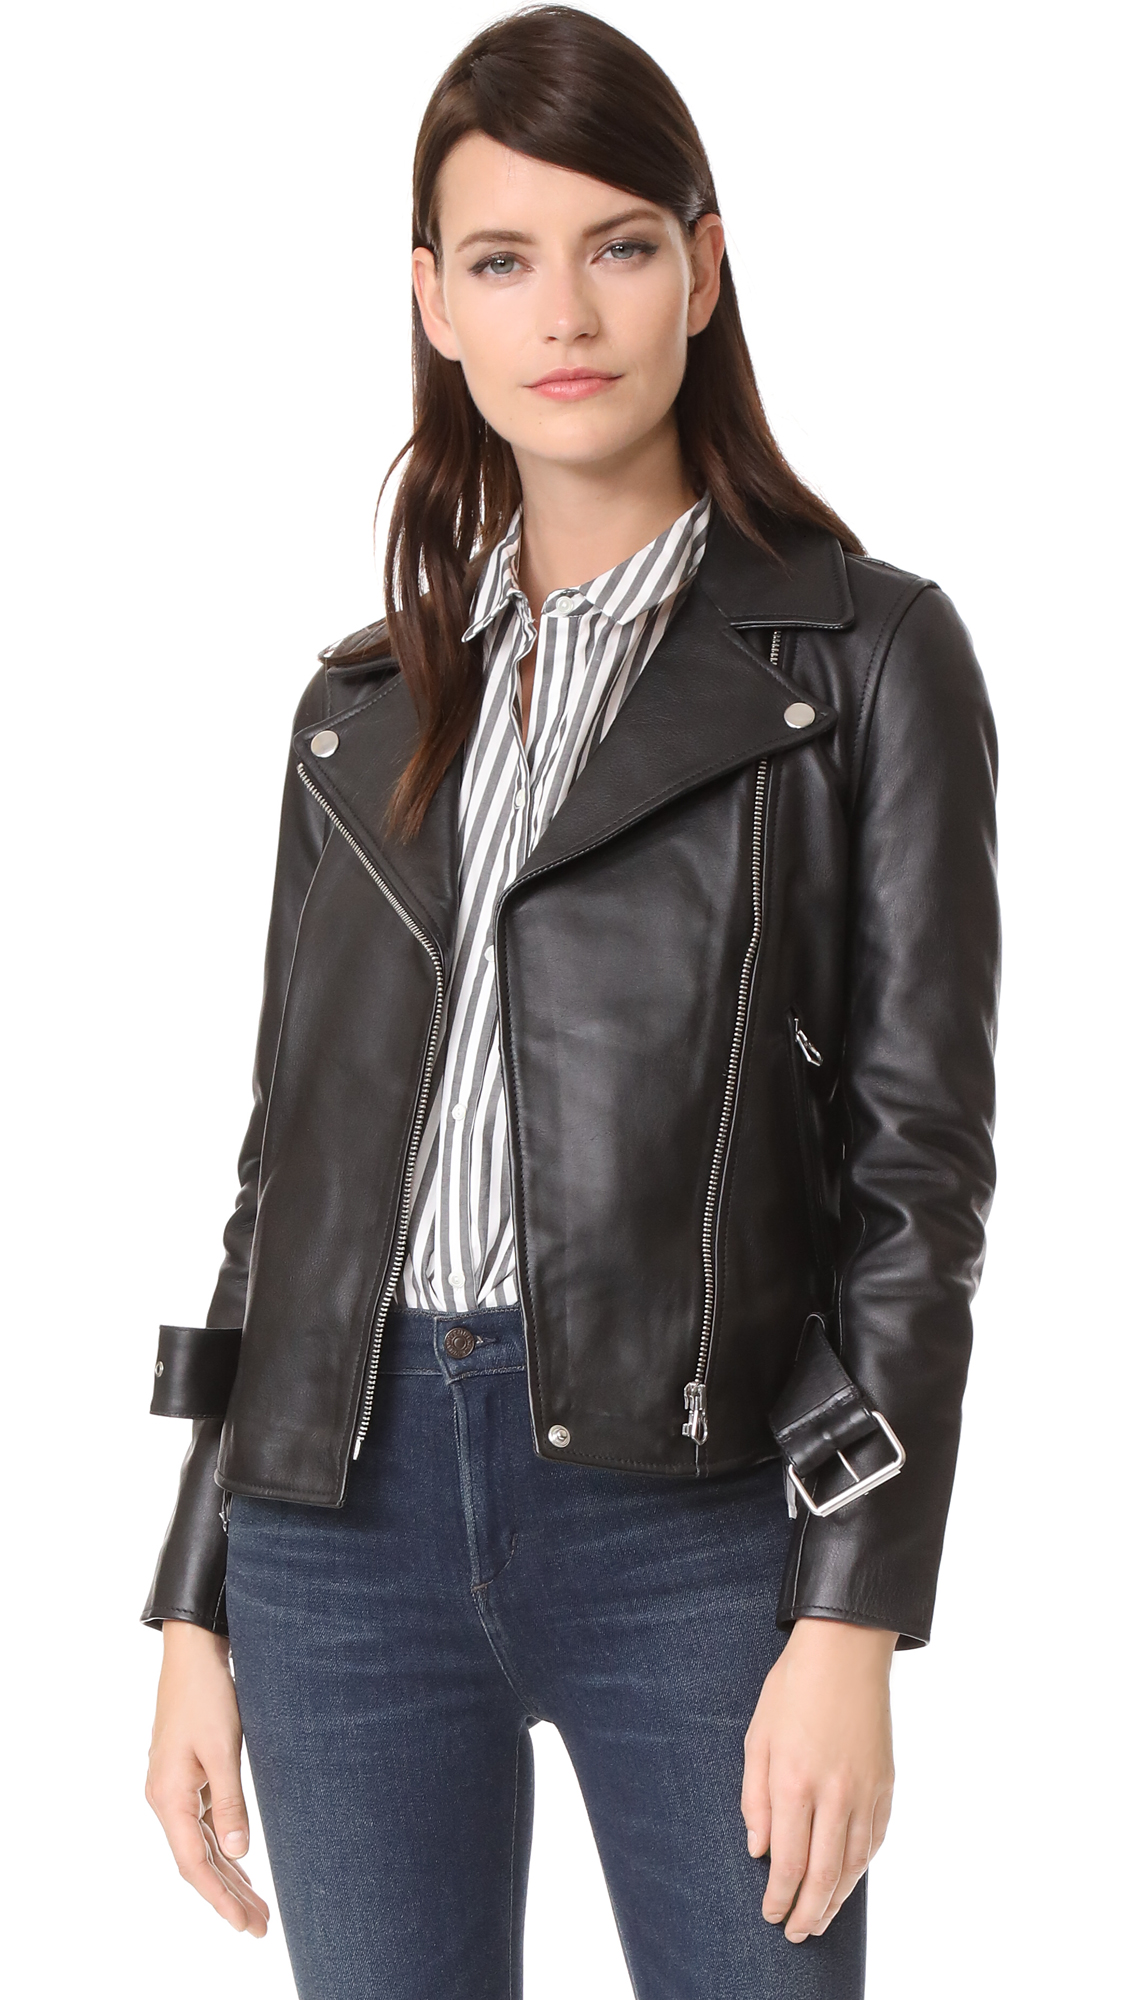 madewell-leather-jacket